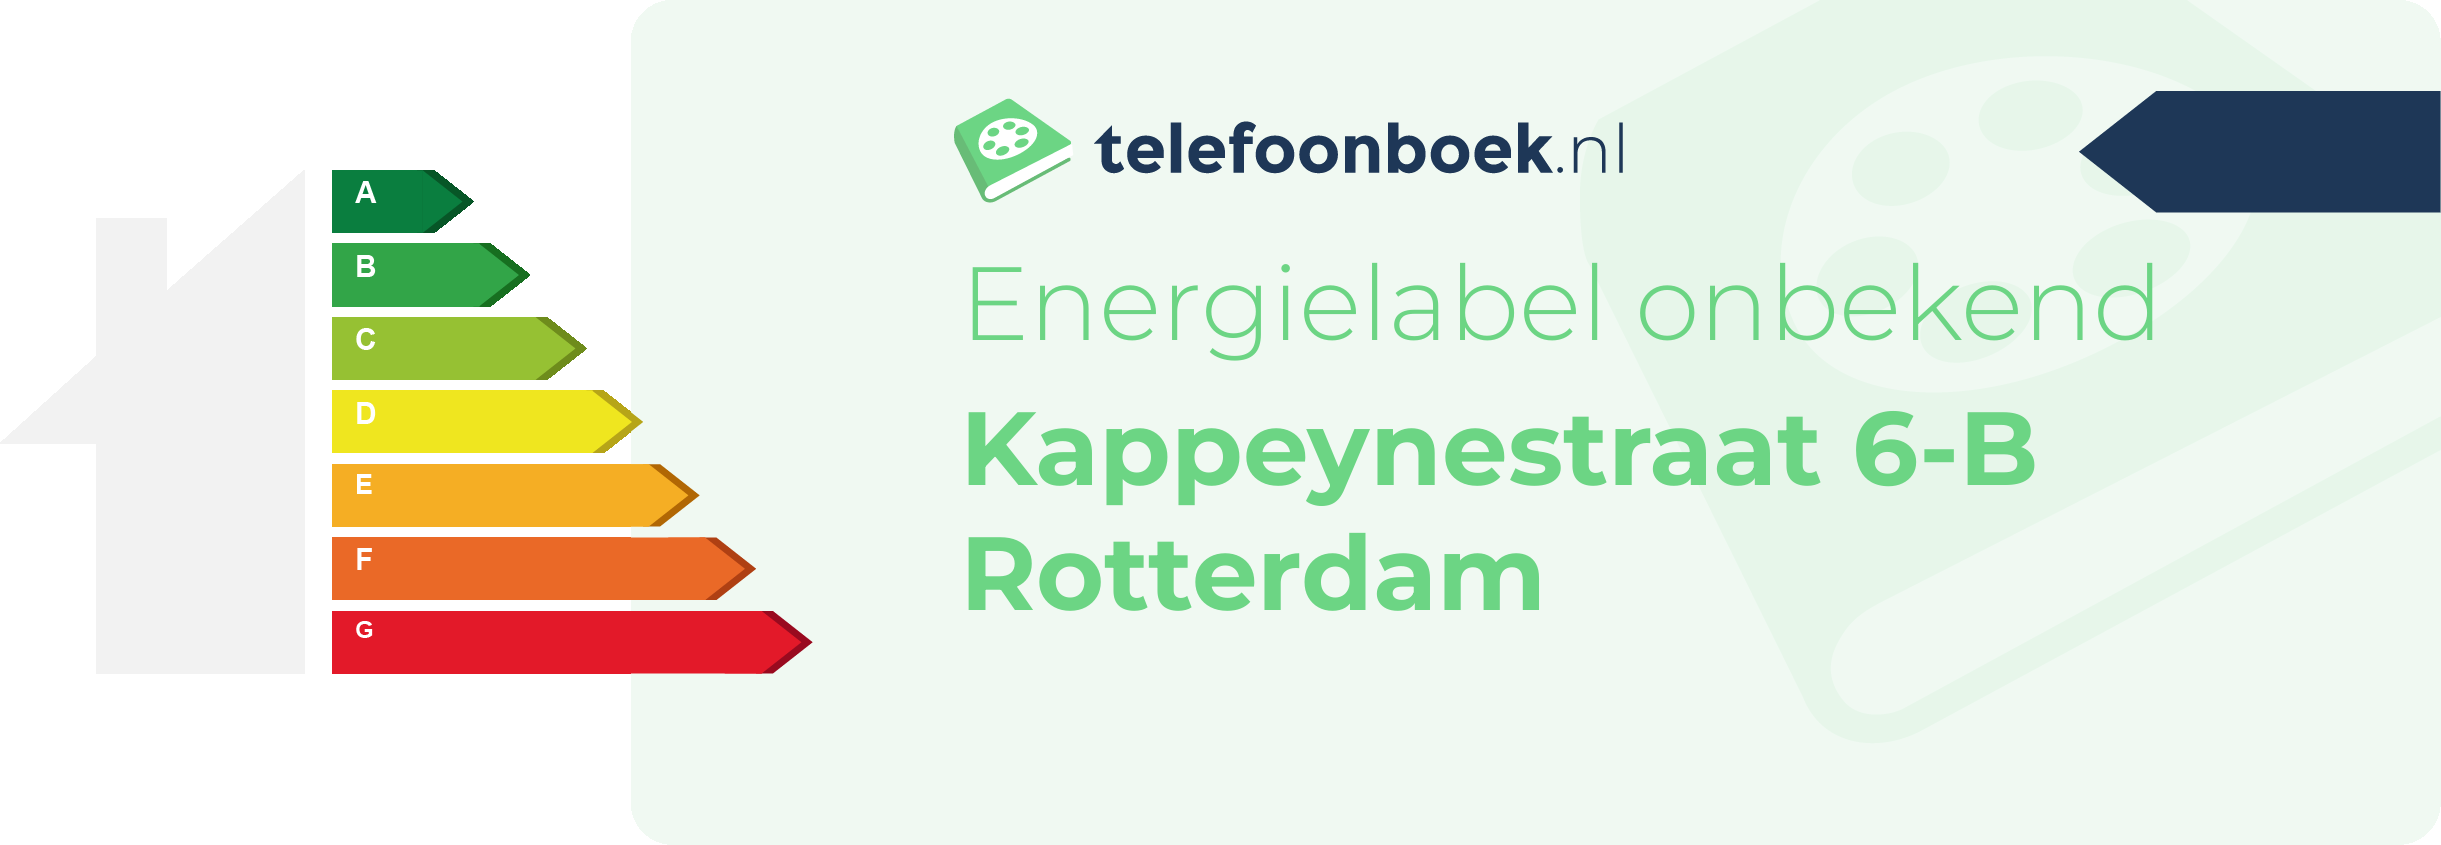 Energielabel Kappeynestraat 6-B Rotterdam